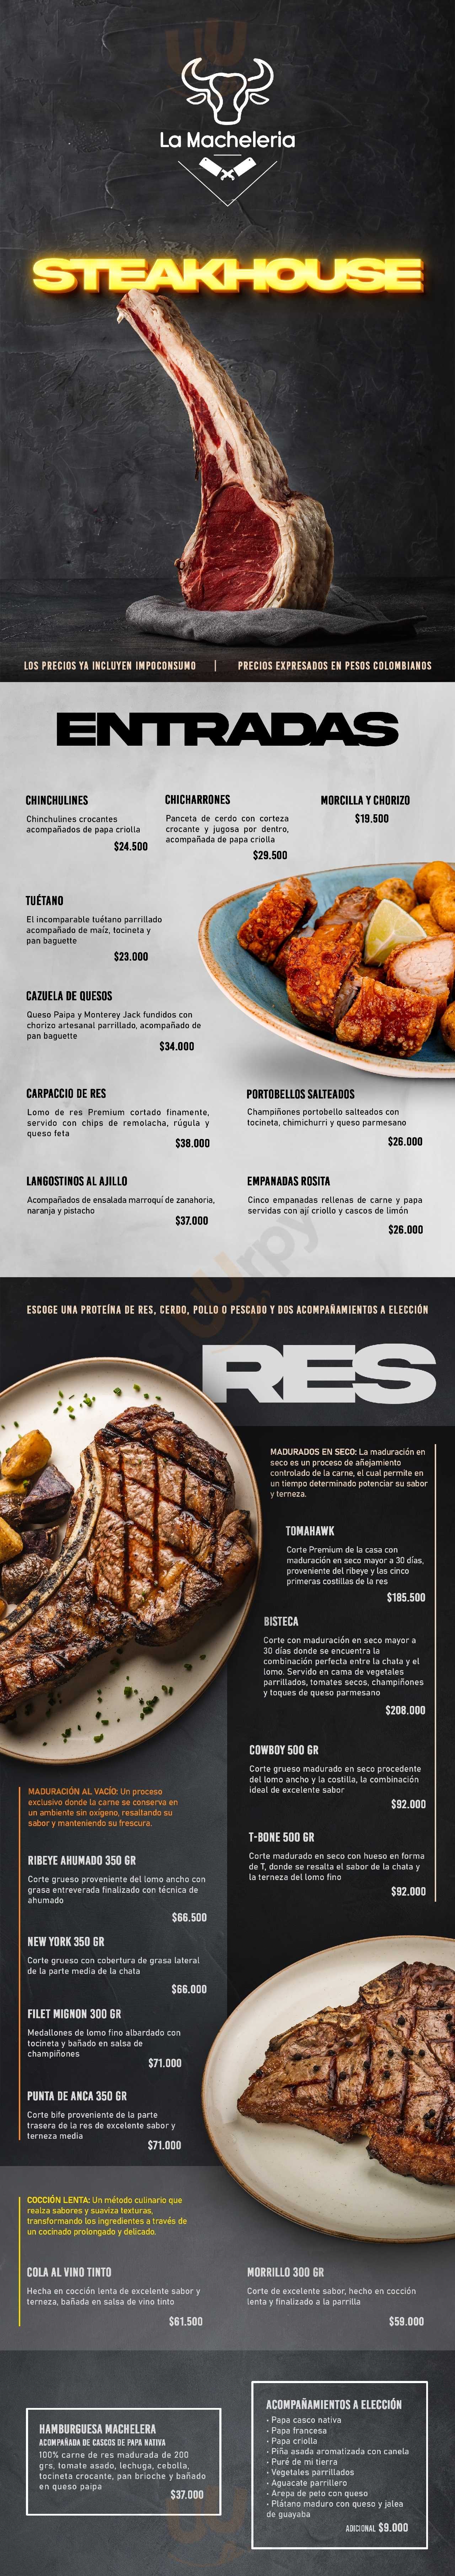 La Macheleria Steakhouse Bogotá Menu - 1